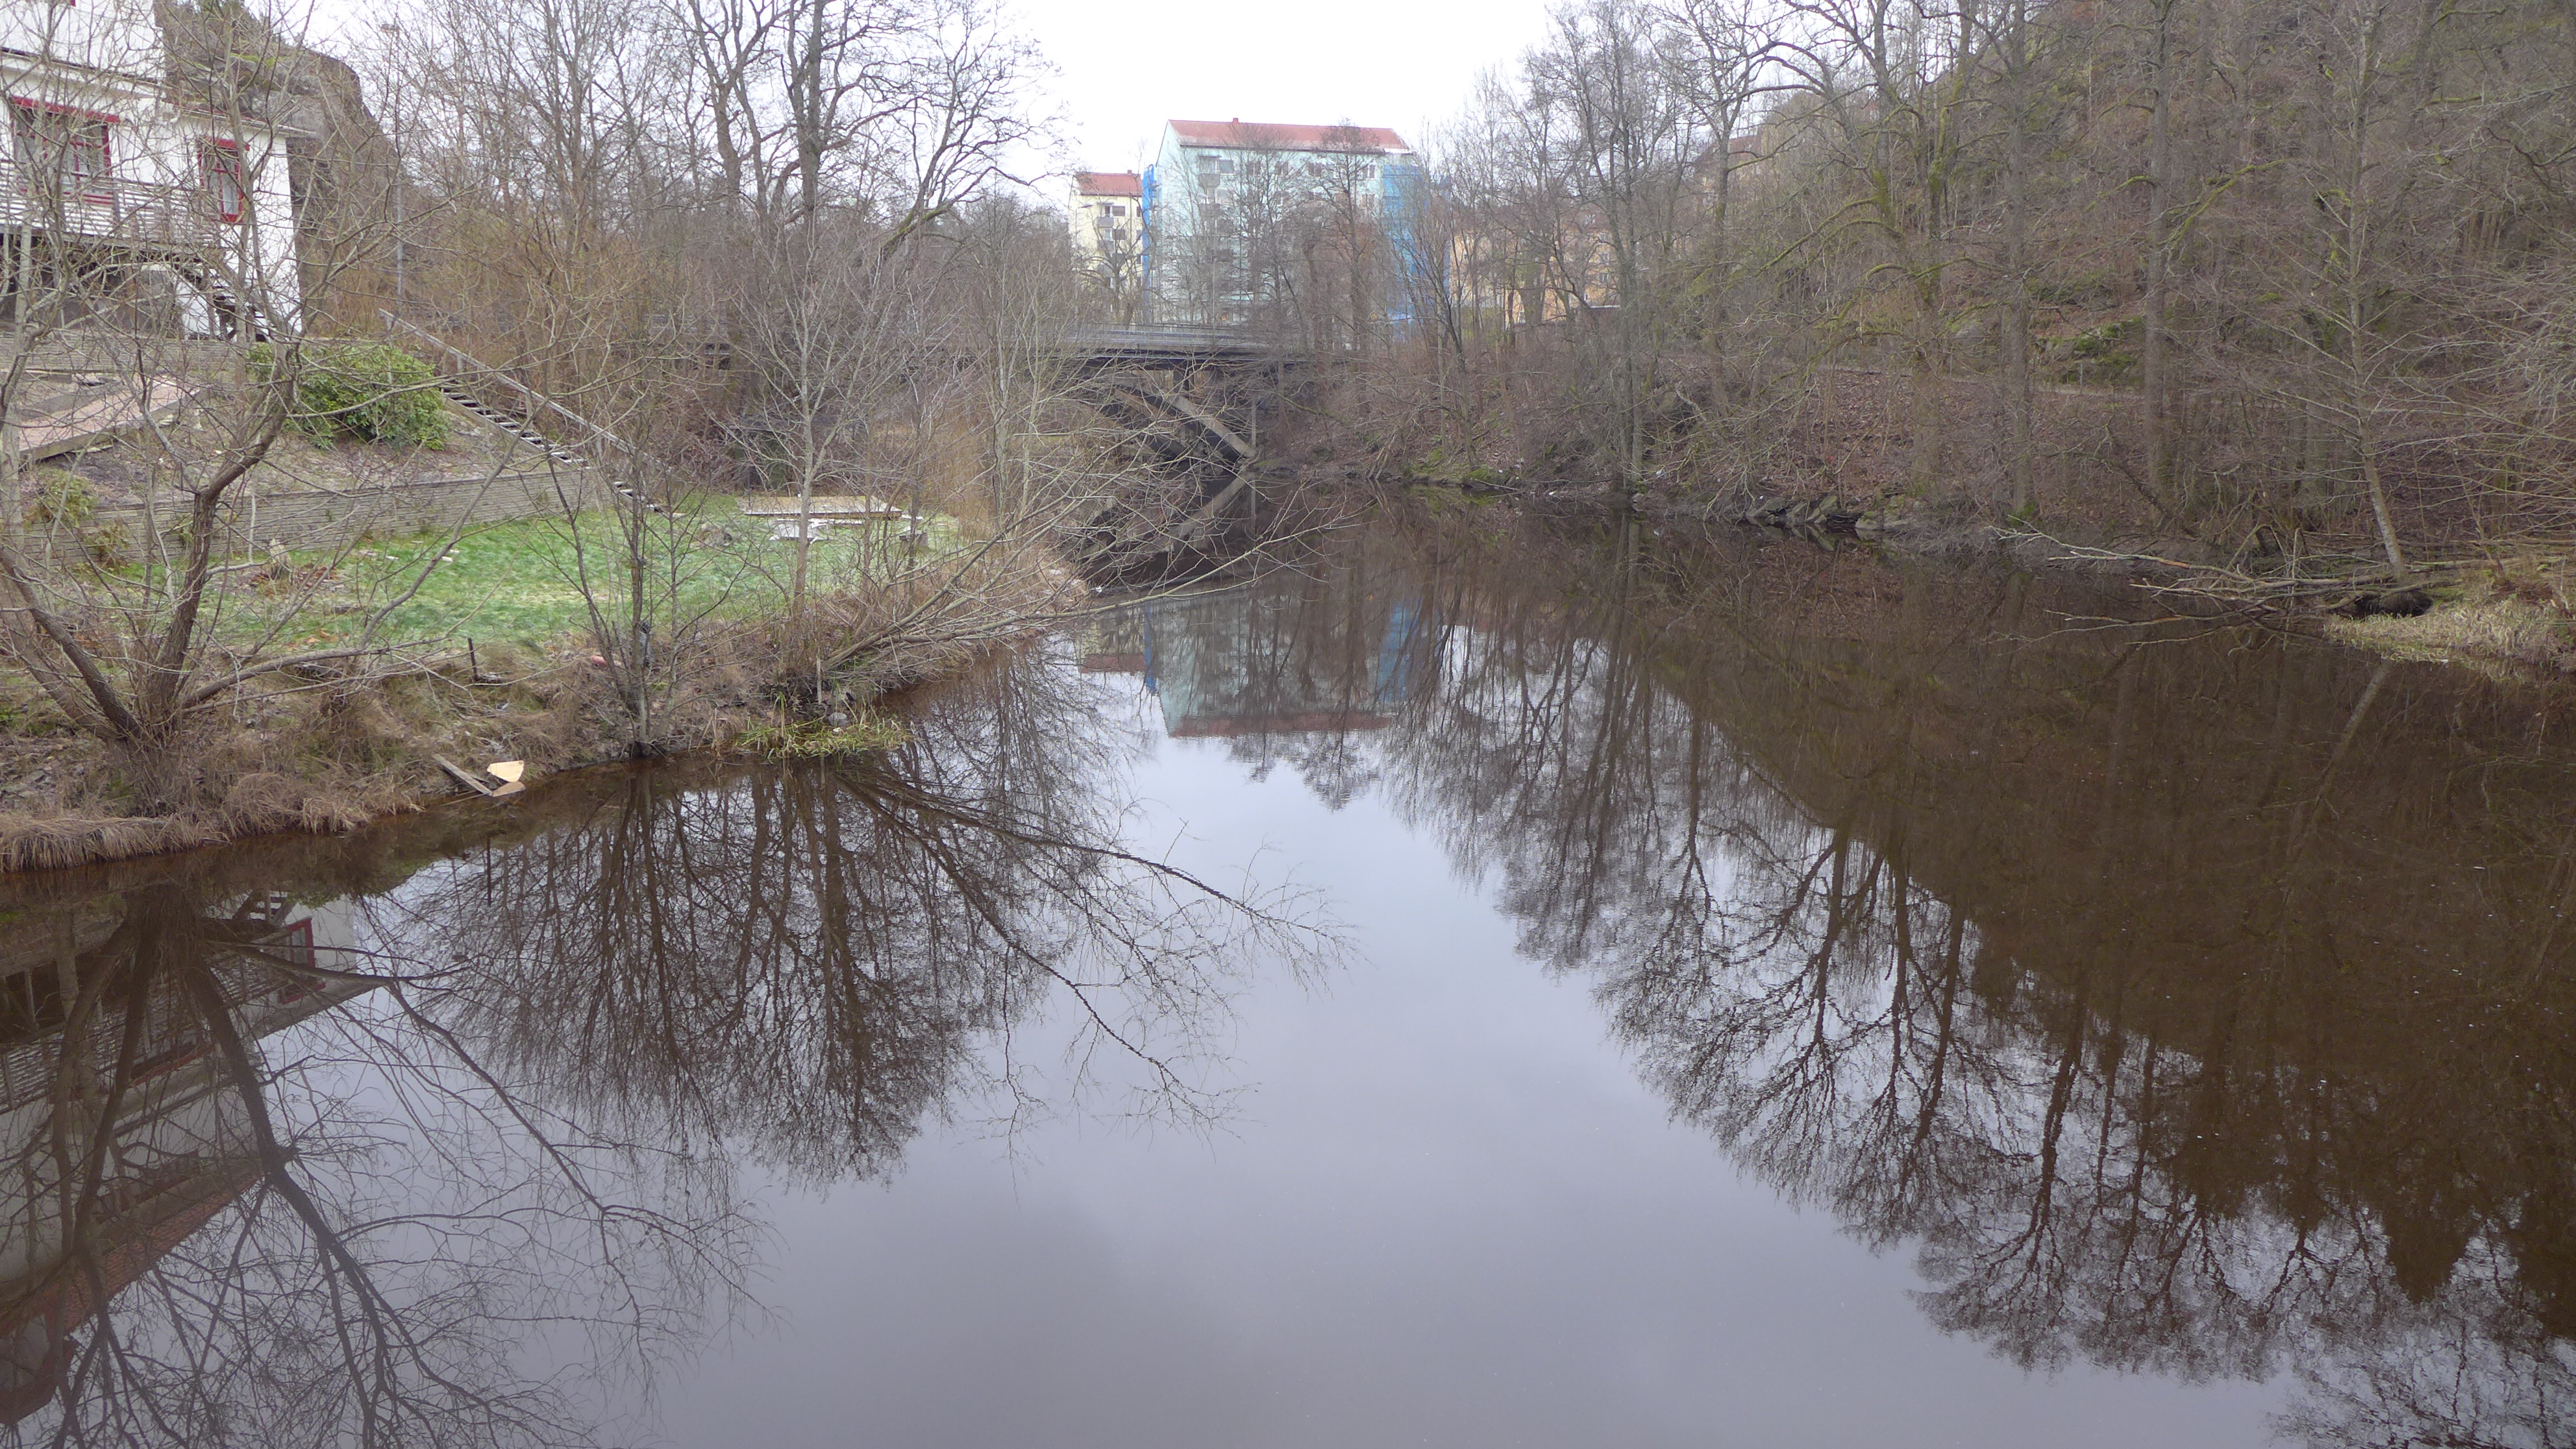 Dammens vattenspegel är inte alls framträdande, utan utgörs snarare av att ån är marginellt bredare uppströms verket. Cirka 100 meter uppströms/österut går en vägbro över ån. Från denna bro hamnar anläggningen i blickfånget. 
